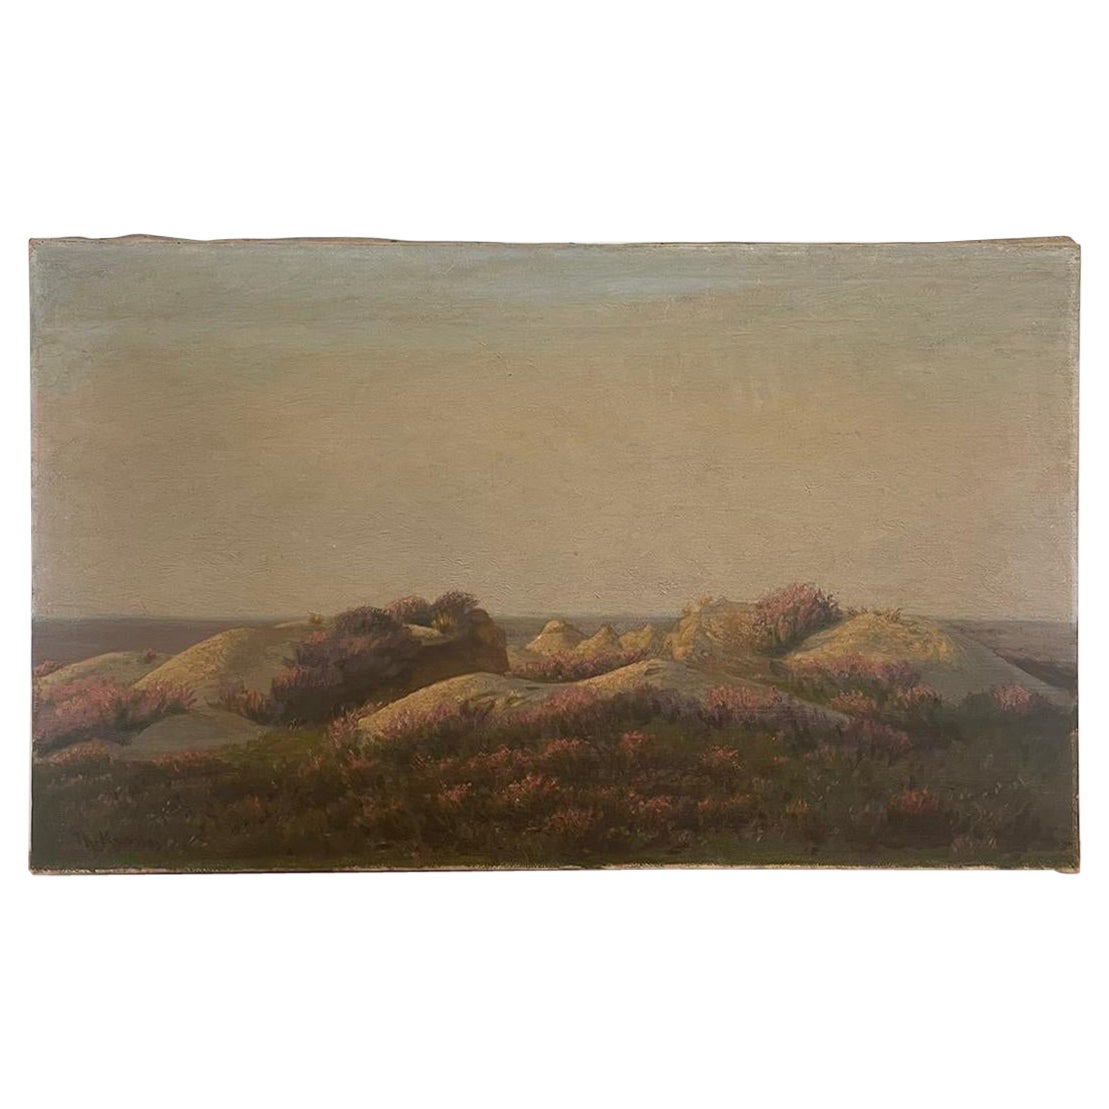 Vieille peinture originale de paysage scénique, probablement française.